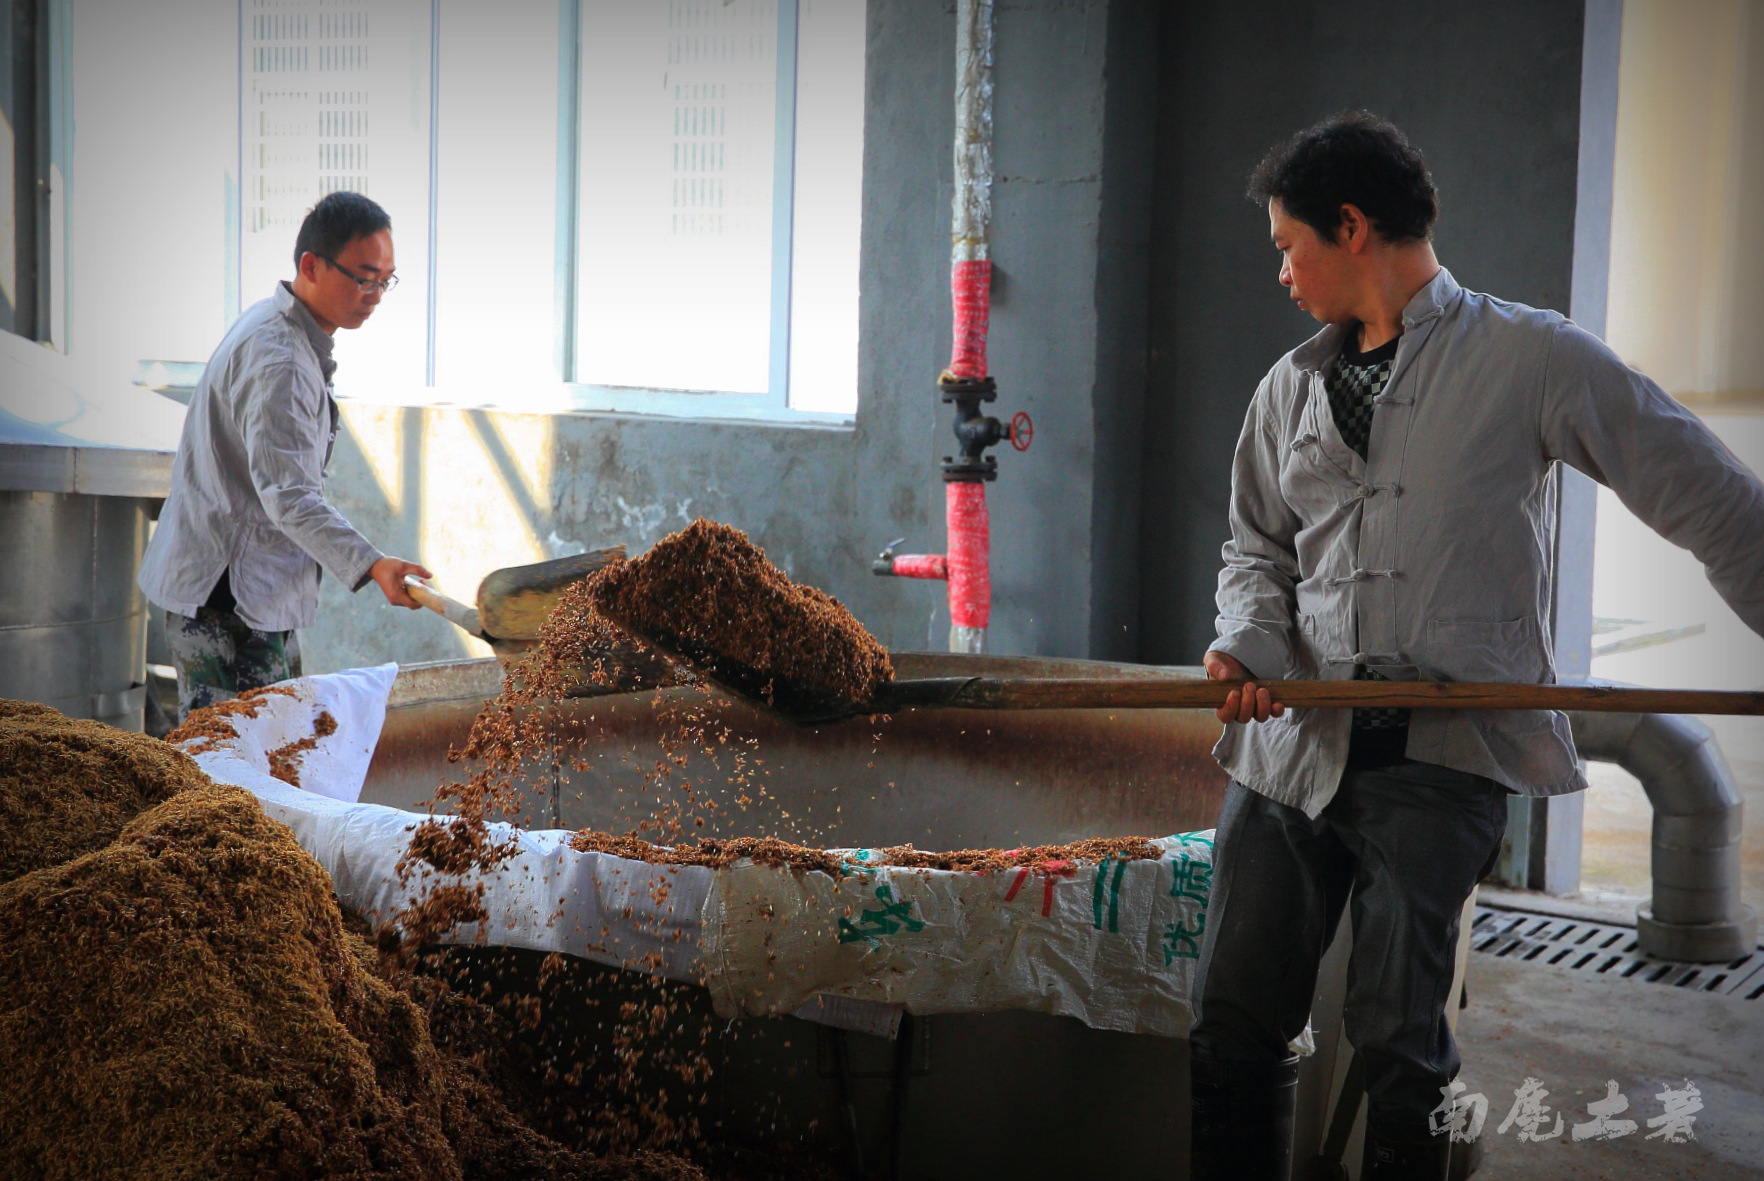 信州春酒的原料采用大米,糯米,玉米,高粱等粮食材料,根据酒类品种搭配